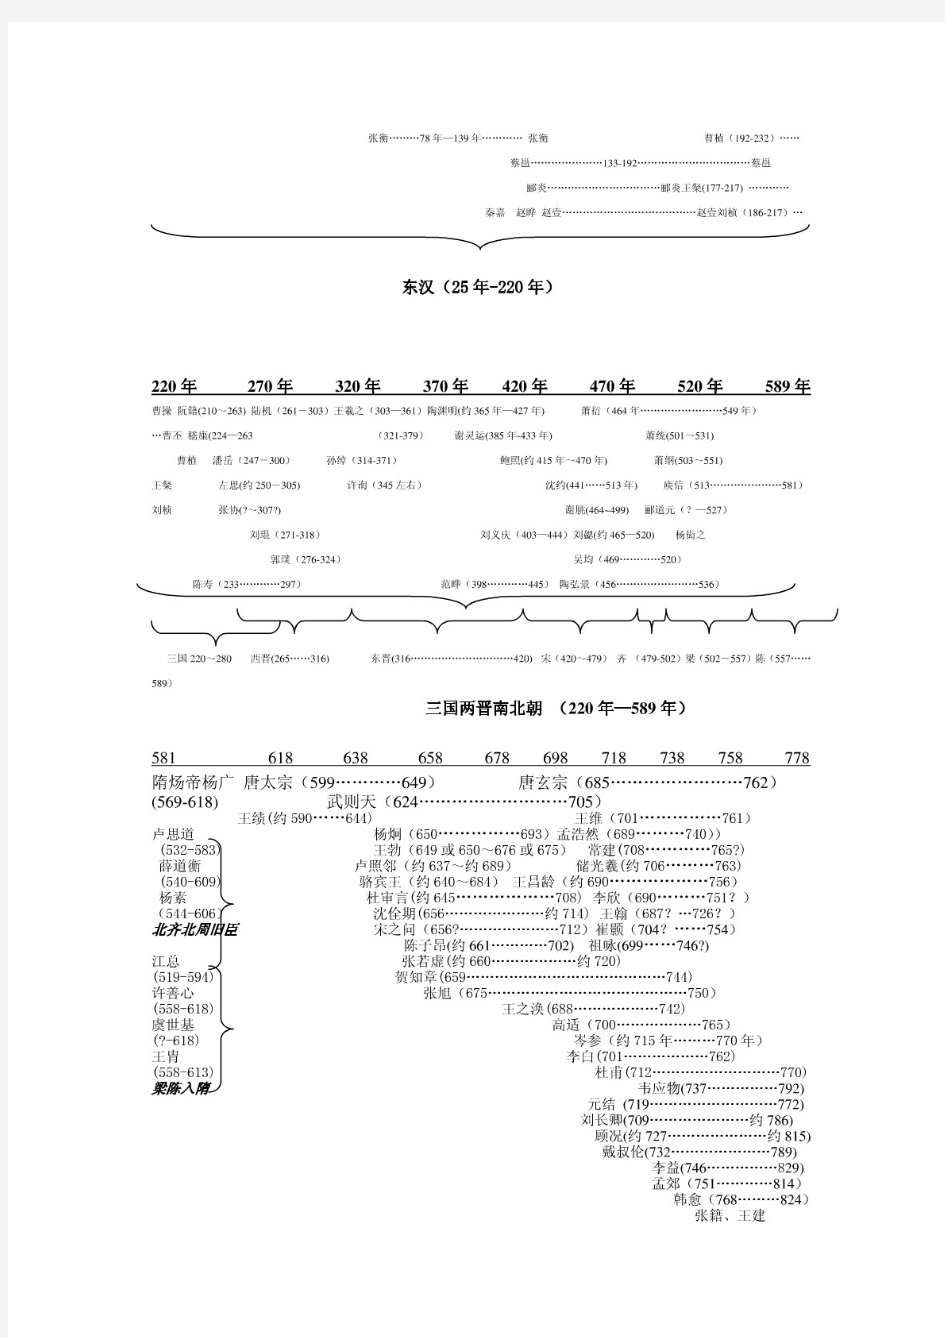 中国古代文化名人朝代人名对照一览表(偏重古代文学方面)